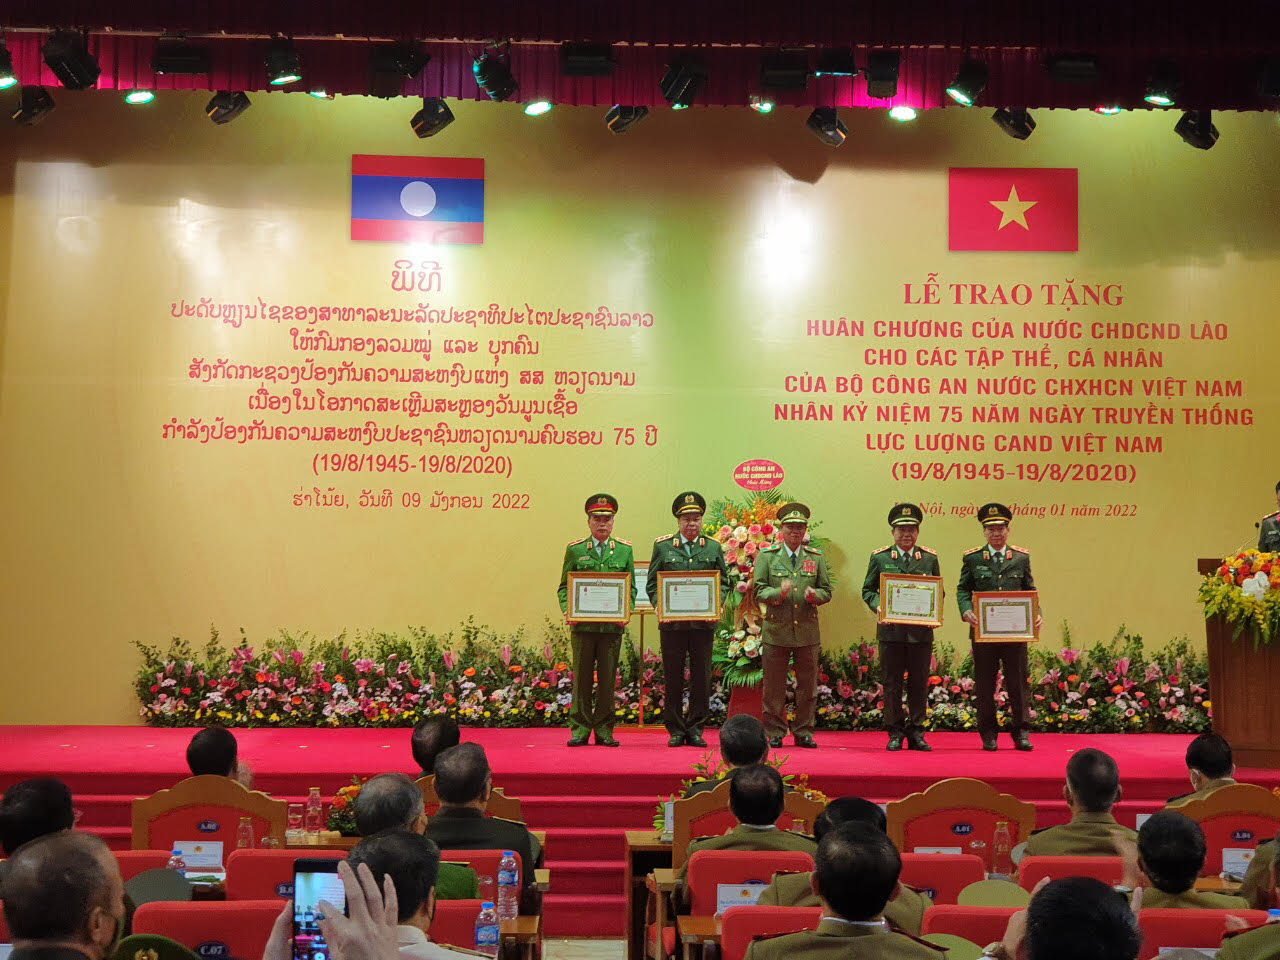 Học viện CSND vinh dự được Nhà nước CHDCND Lào trao tặng Huân chương Tự do hạng Ba